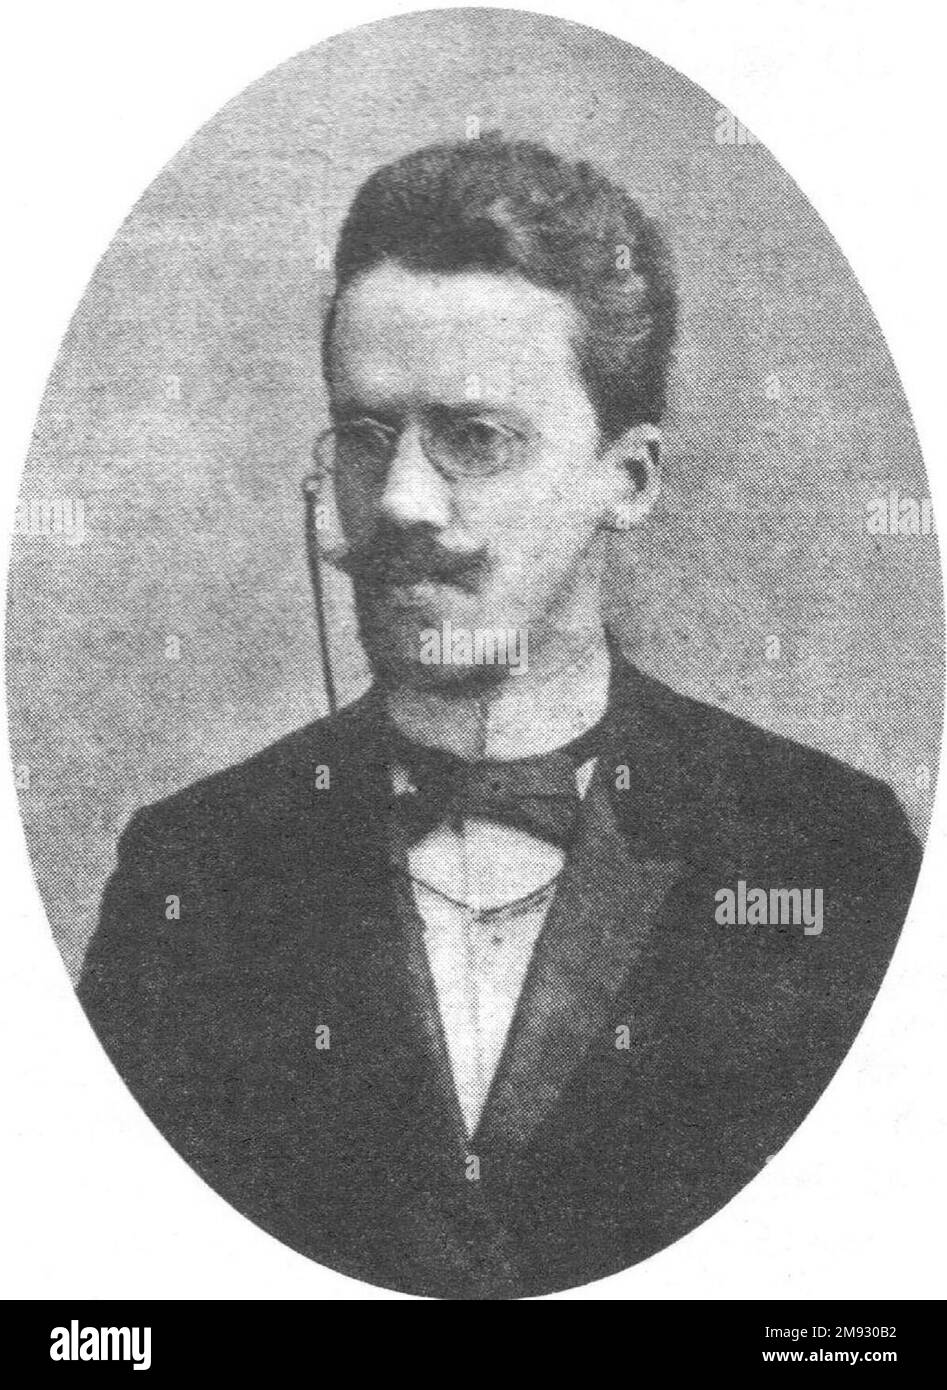 Alexander Nikolajewitsch Tsekhanowitsch - Prosa-Autor, Journalist. Ca. Ungefähr 1890 Stockfoto